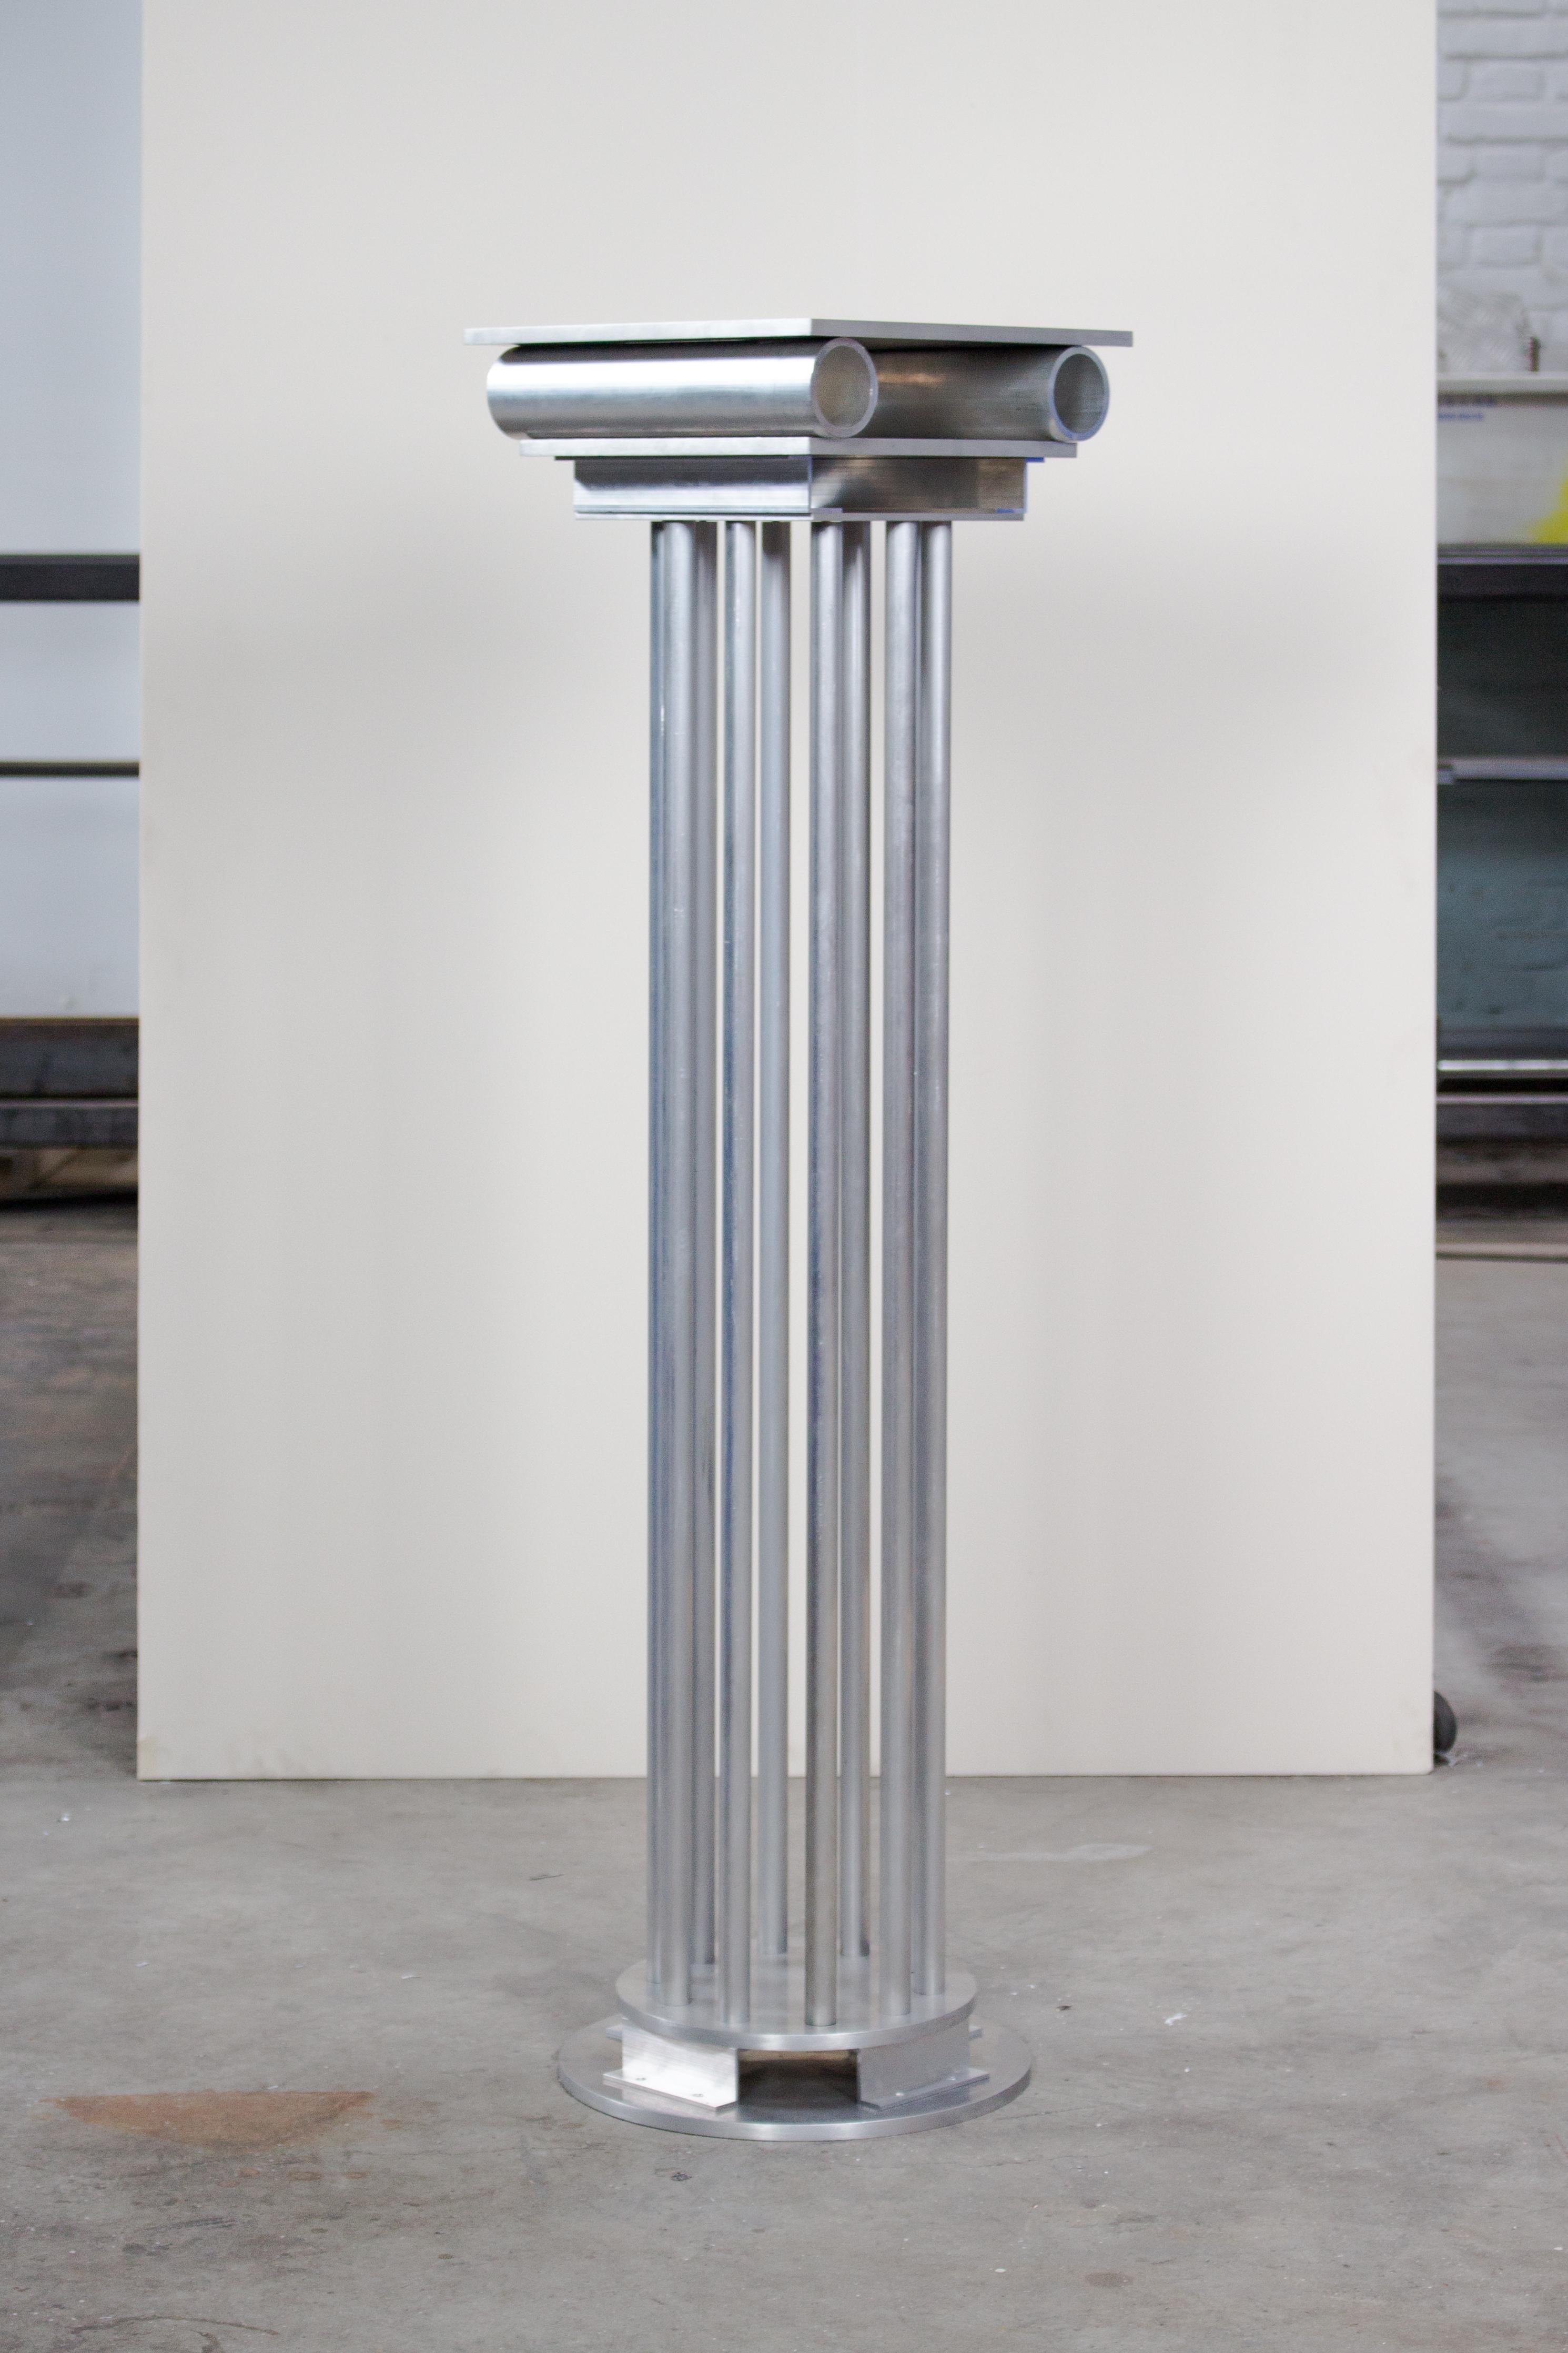 Pteron-Säule von Joachim-Morineau Studio
Limitierte Auflage von 8 Stück
Abmessungen: H 105 x T 30 x B 30 cm, 12 kg
MATERIALIEN: Aluminiumrohre, -profile, -schrauben und -bleche
Es besteht die Möglichkeit, eine andere Farbe/ein anderes Finish zu